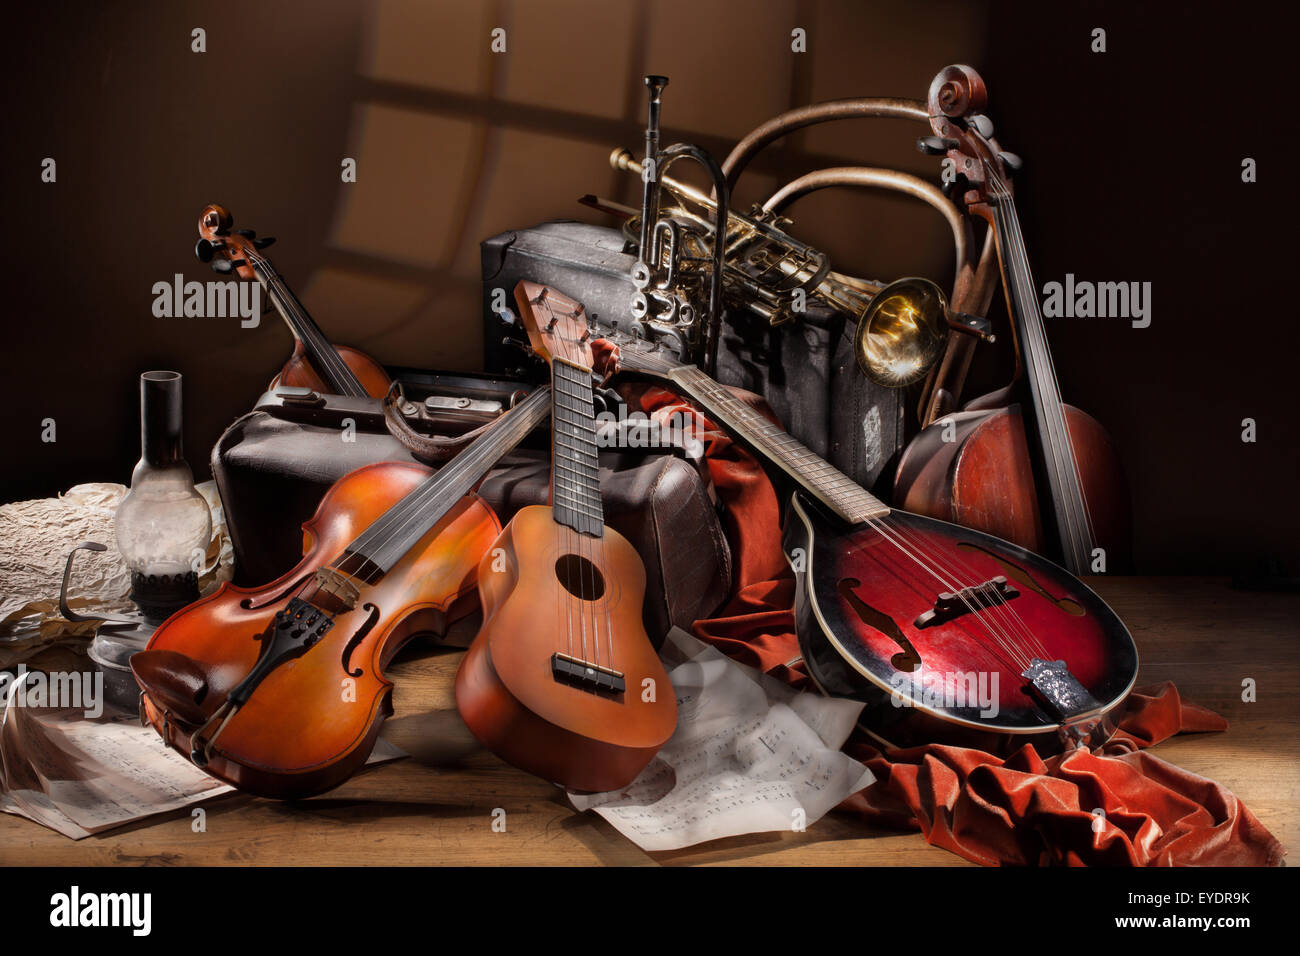 Ancora vita musicale arte musica stringa strumento folk chitarra ukulele violino tromba di metallo in ottone tavolo in legno tessuto studio Foto Stock